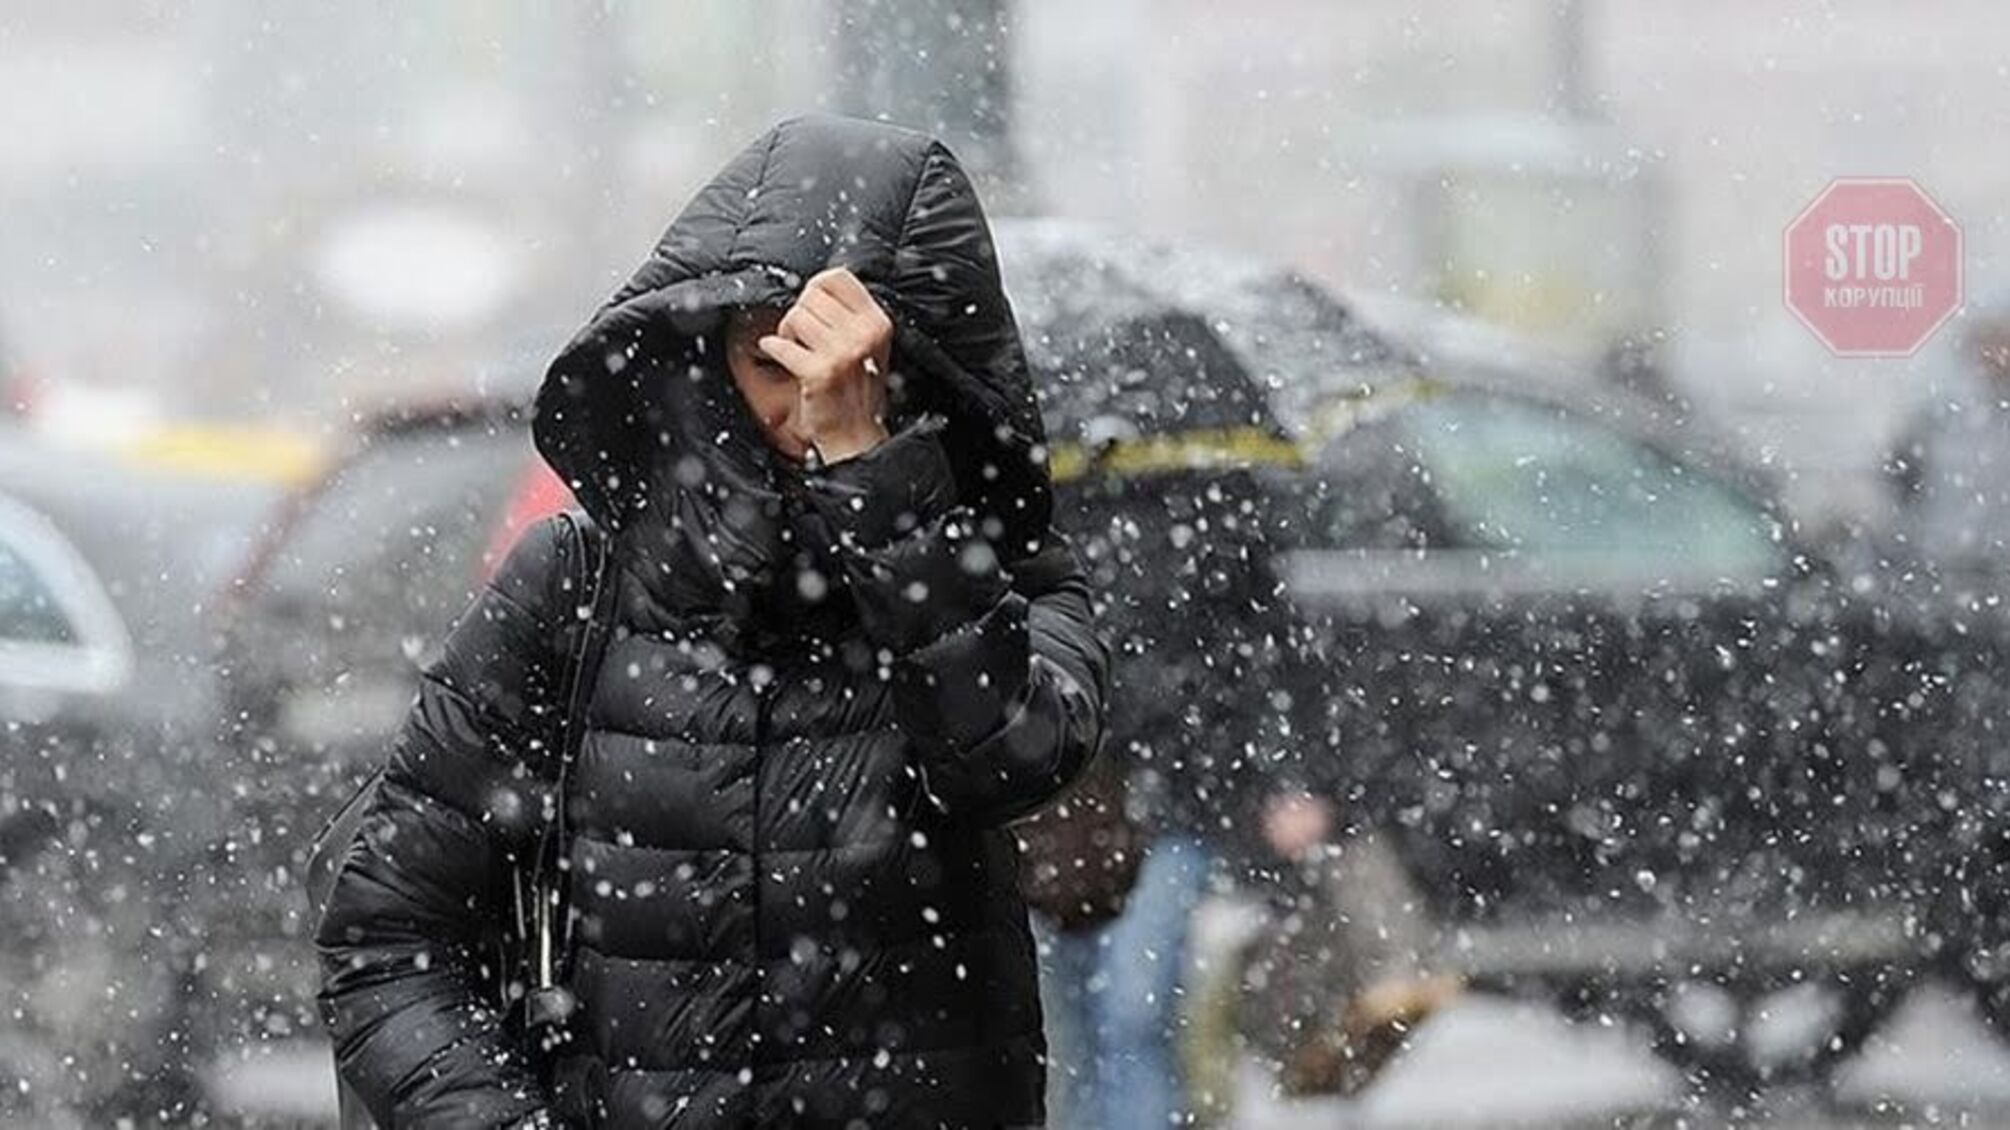 В Україні очікується мокрий сніг та сильний вітер